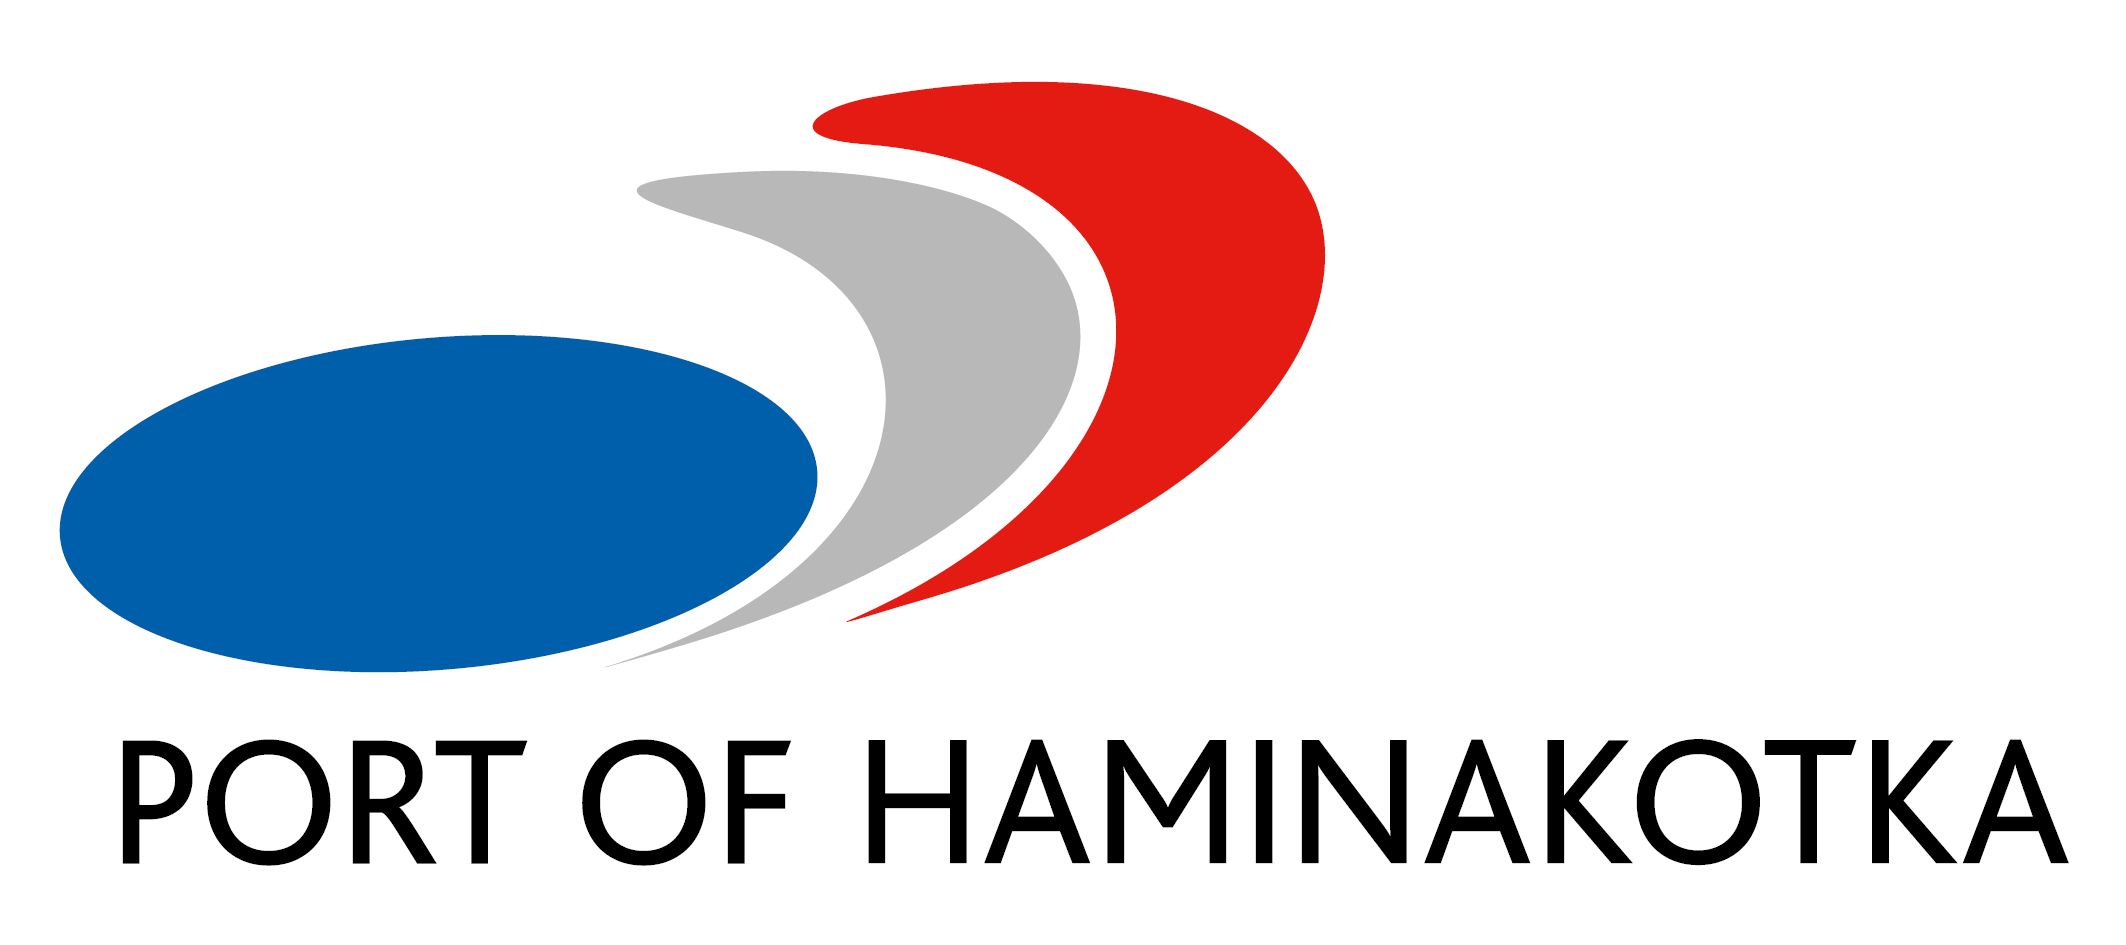 HaminaKotka - logo